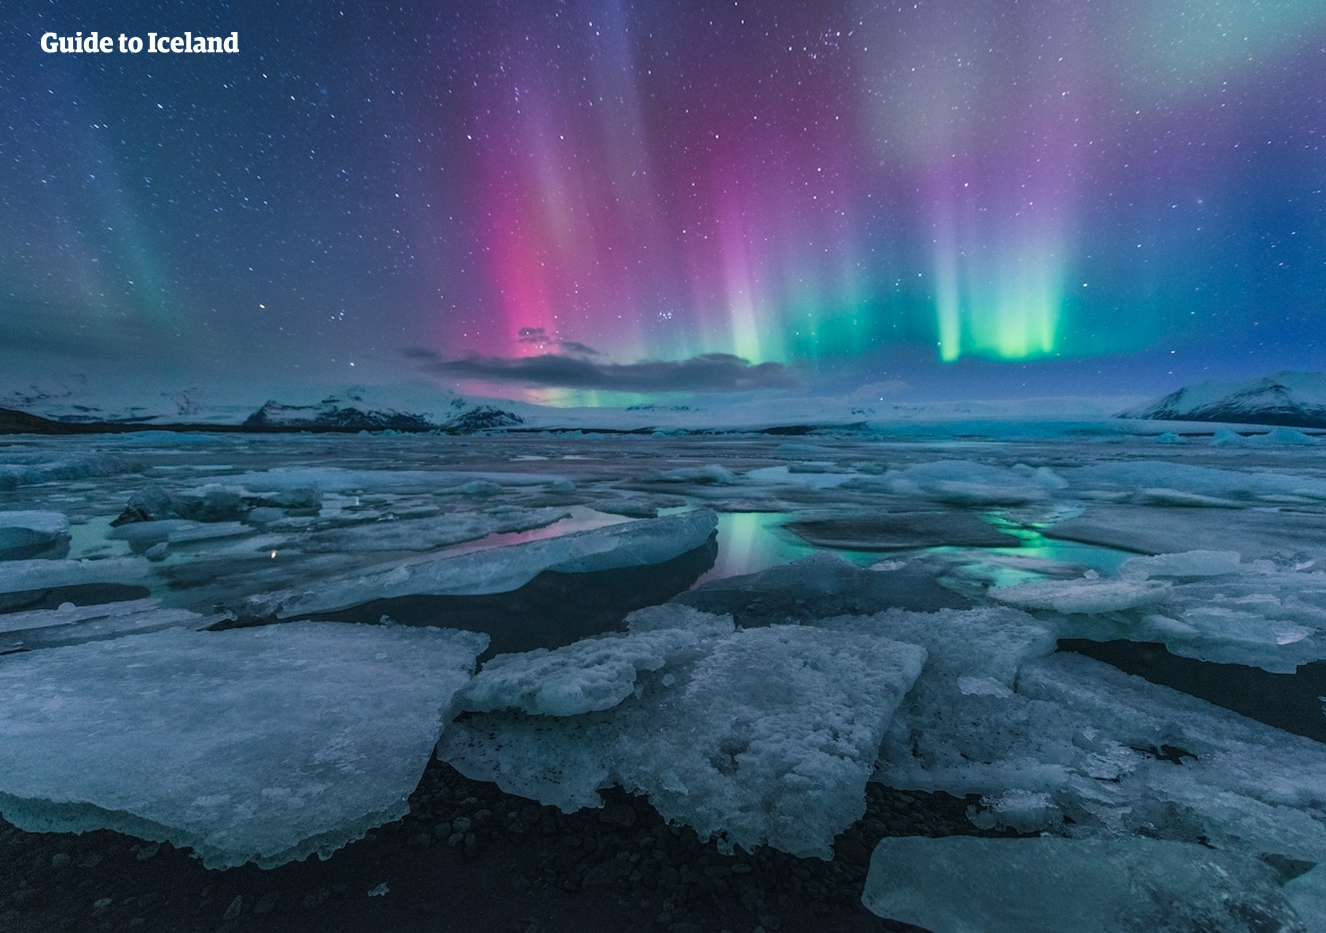 Die wunderschönen Nordlichter tanzen am Himmel über der Gletscherlagune Jökulsarlon.